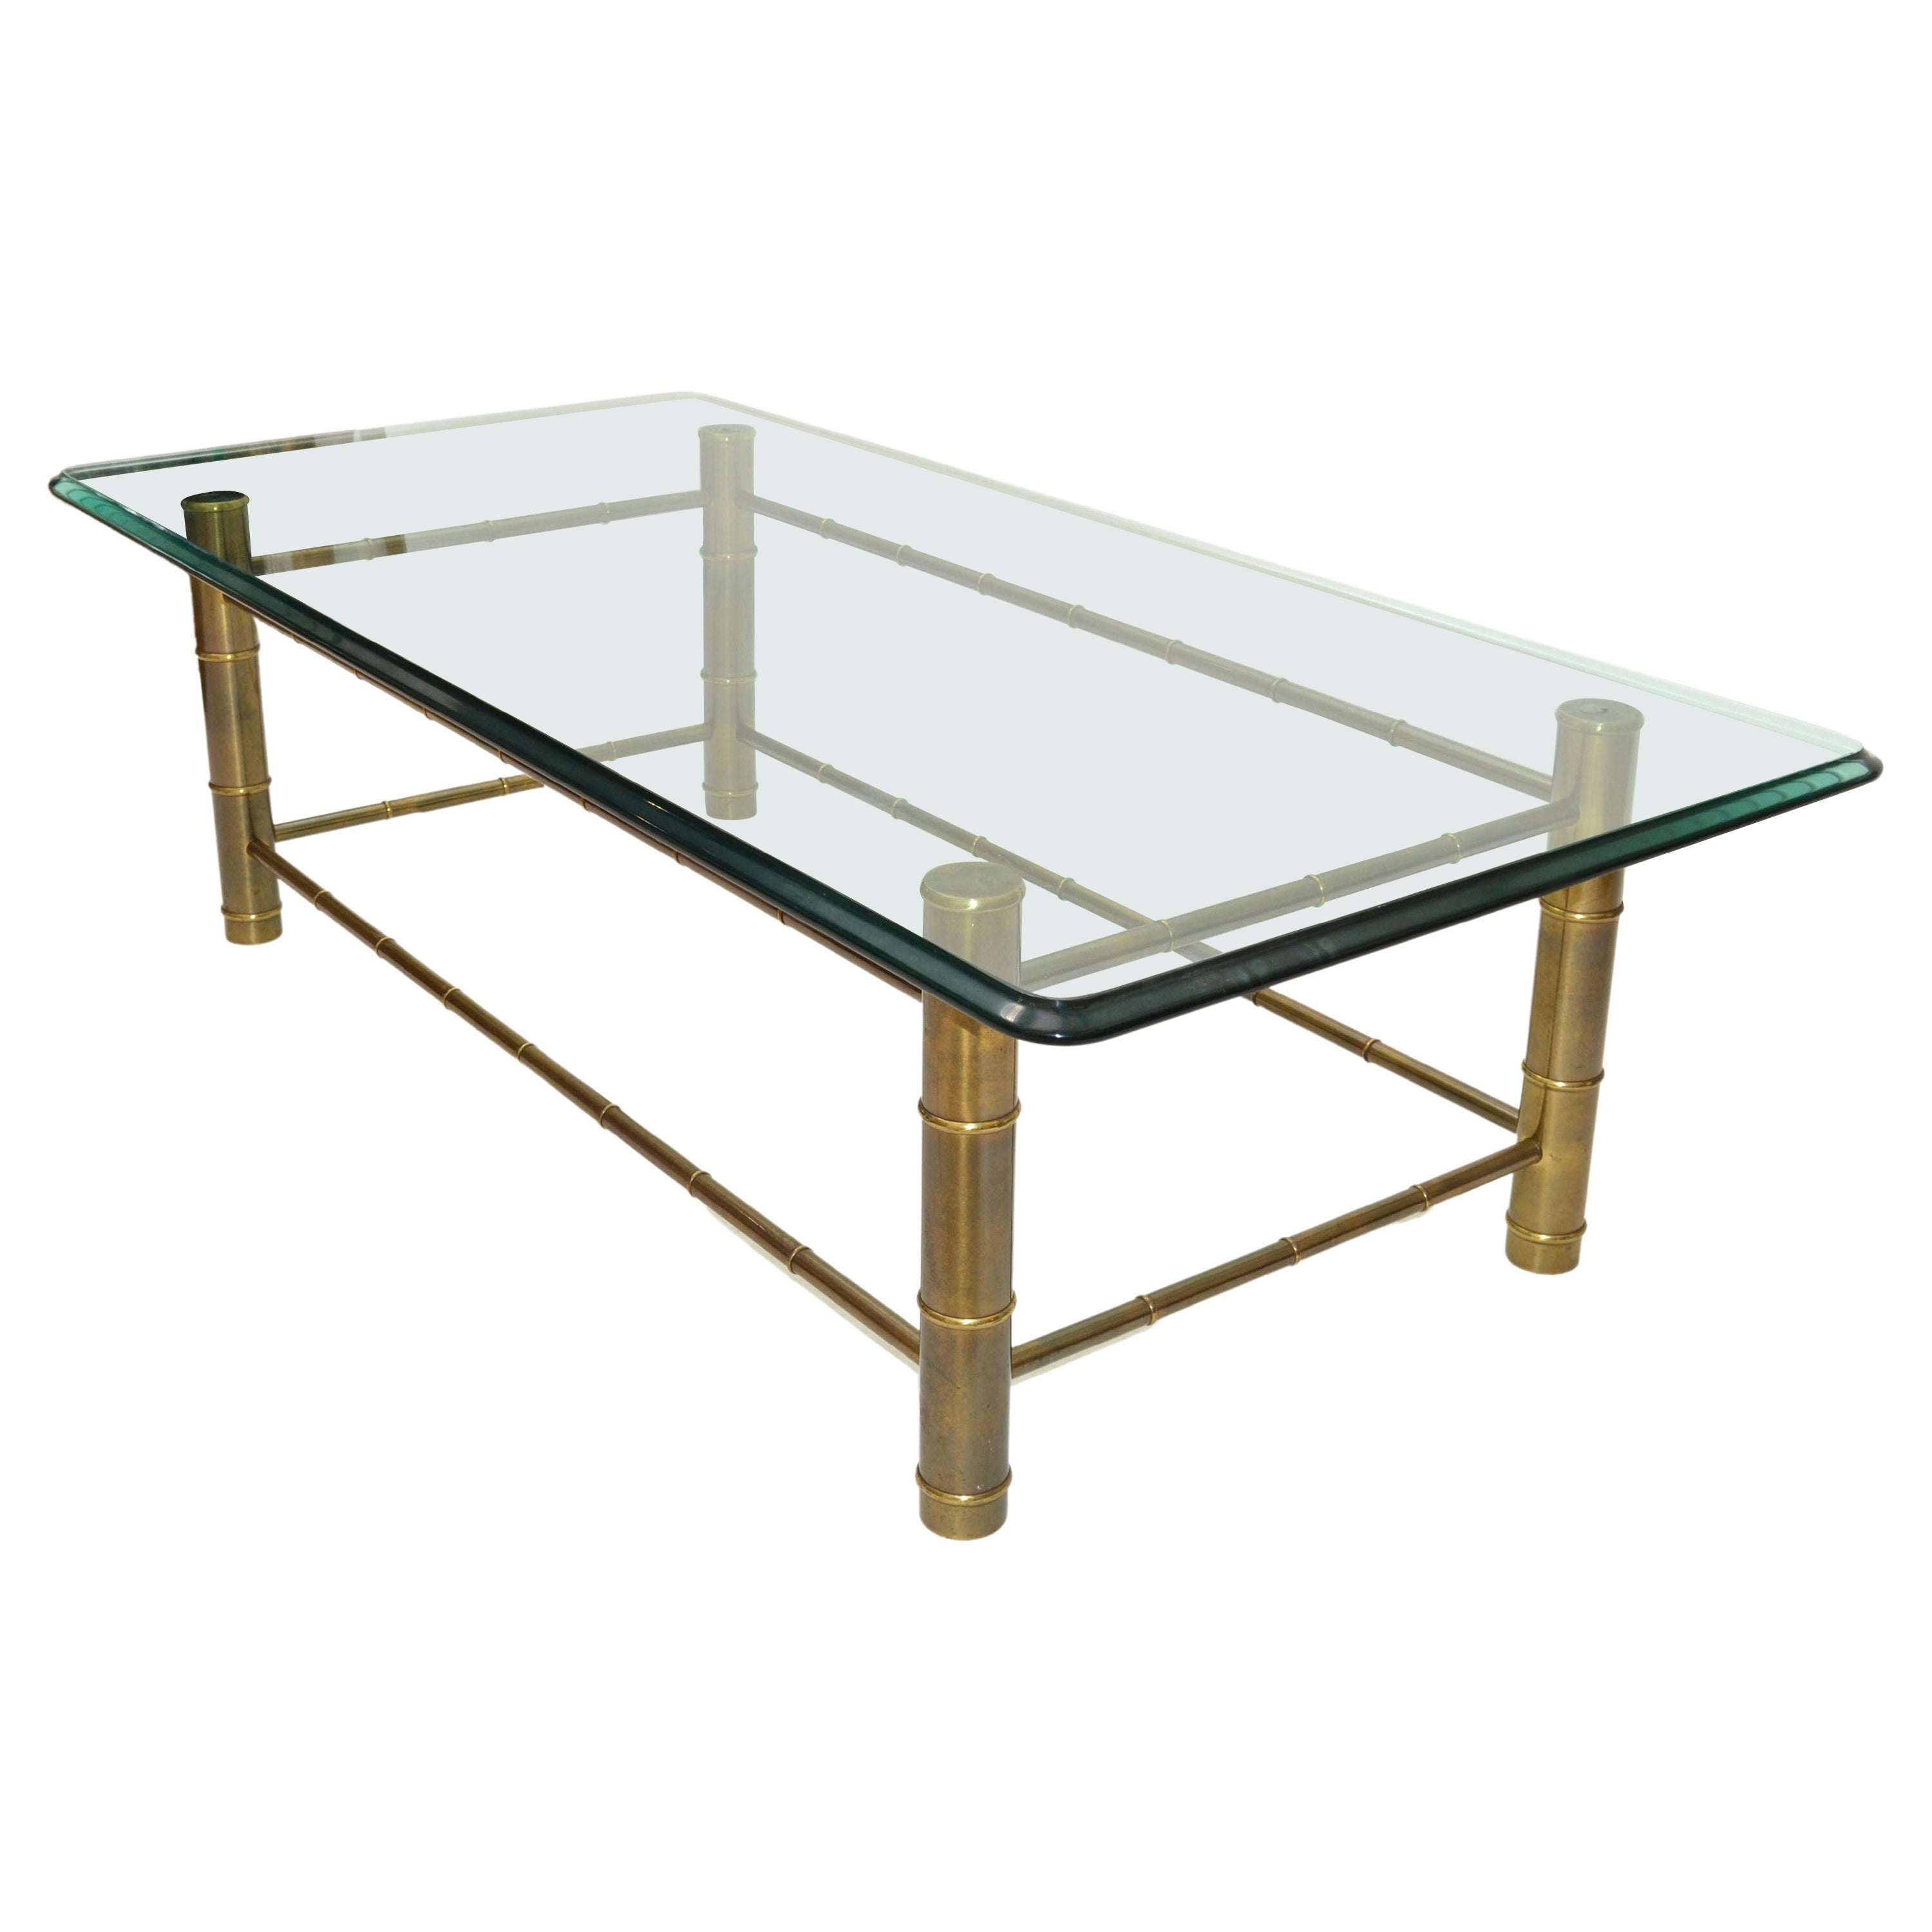 Table basse rectangulaire en laiton imitation bambou et verre teinté biseauté Mastercraft